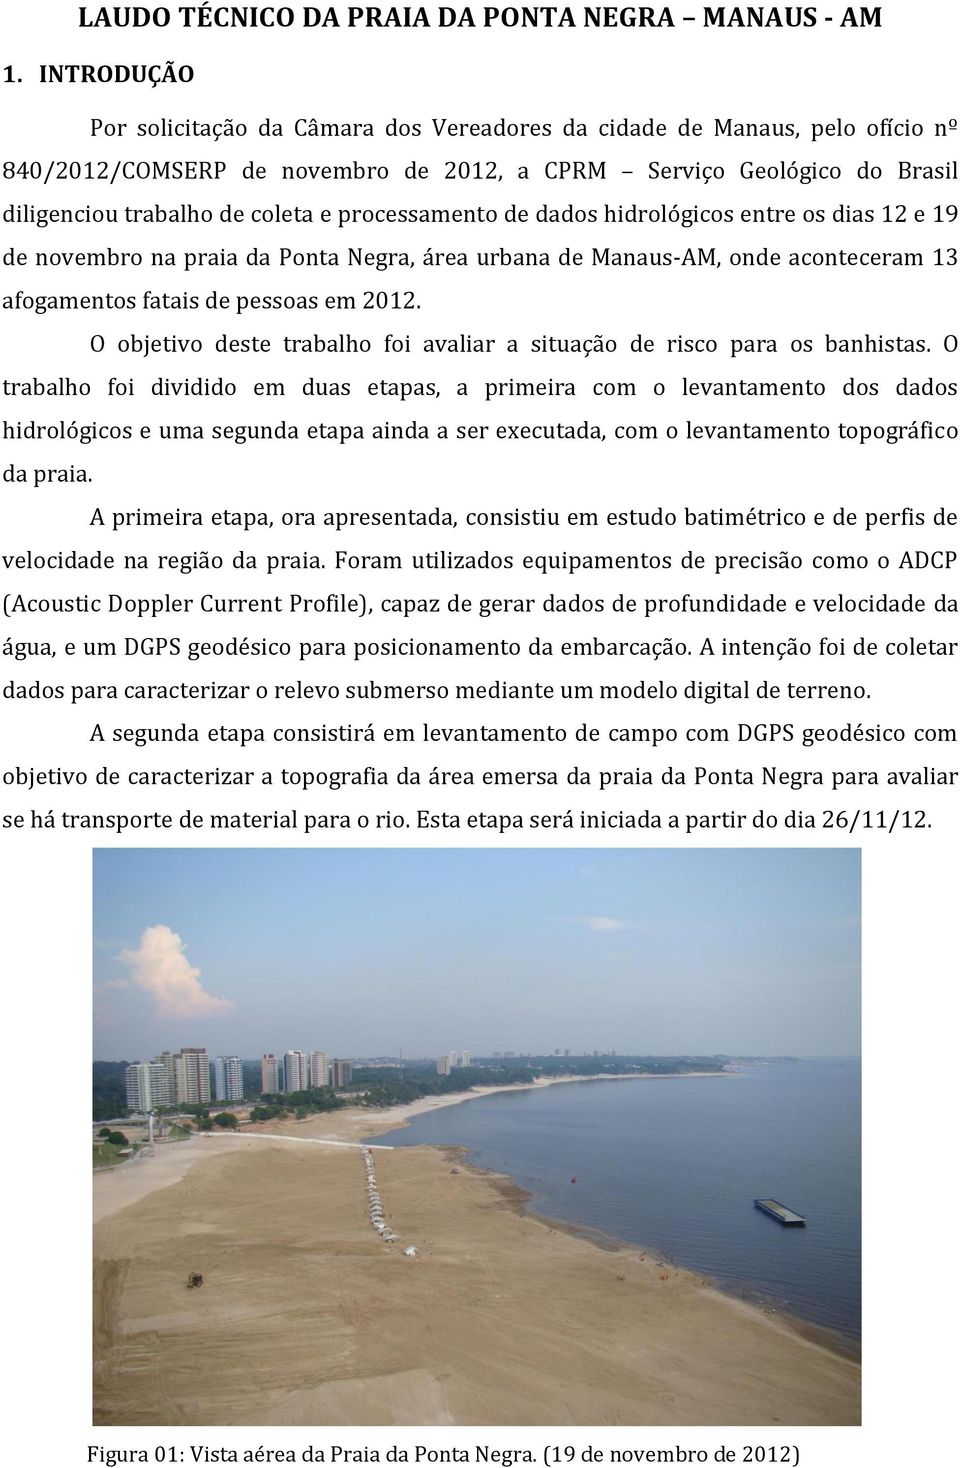 processamento de dados hidrológicos entre os dias 12 e 19 de novembro na praia da Ponta Negra, área urbana de Manaus-AM, onde aconteceram 13 afogamentos fatais de pessoas em 2012.